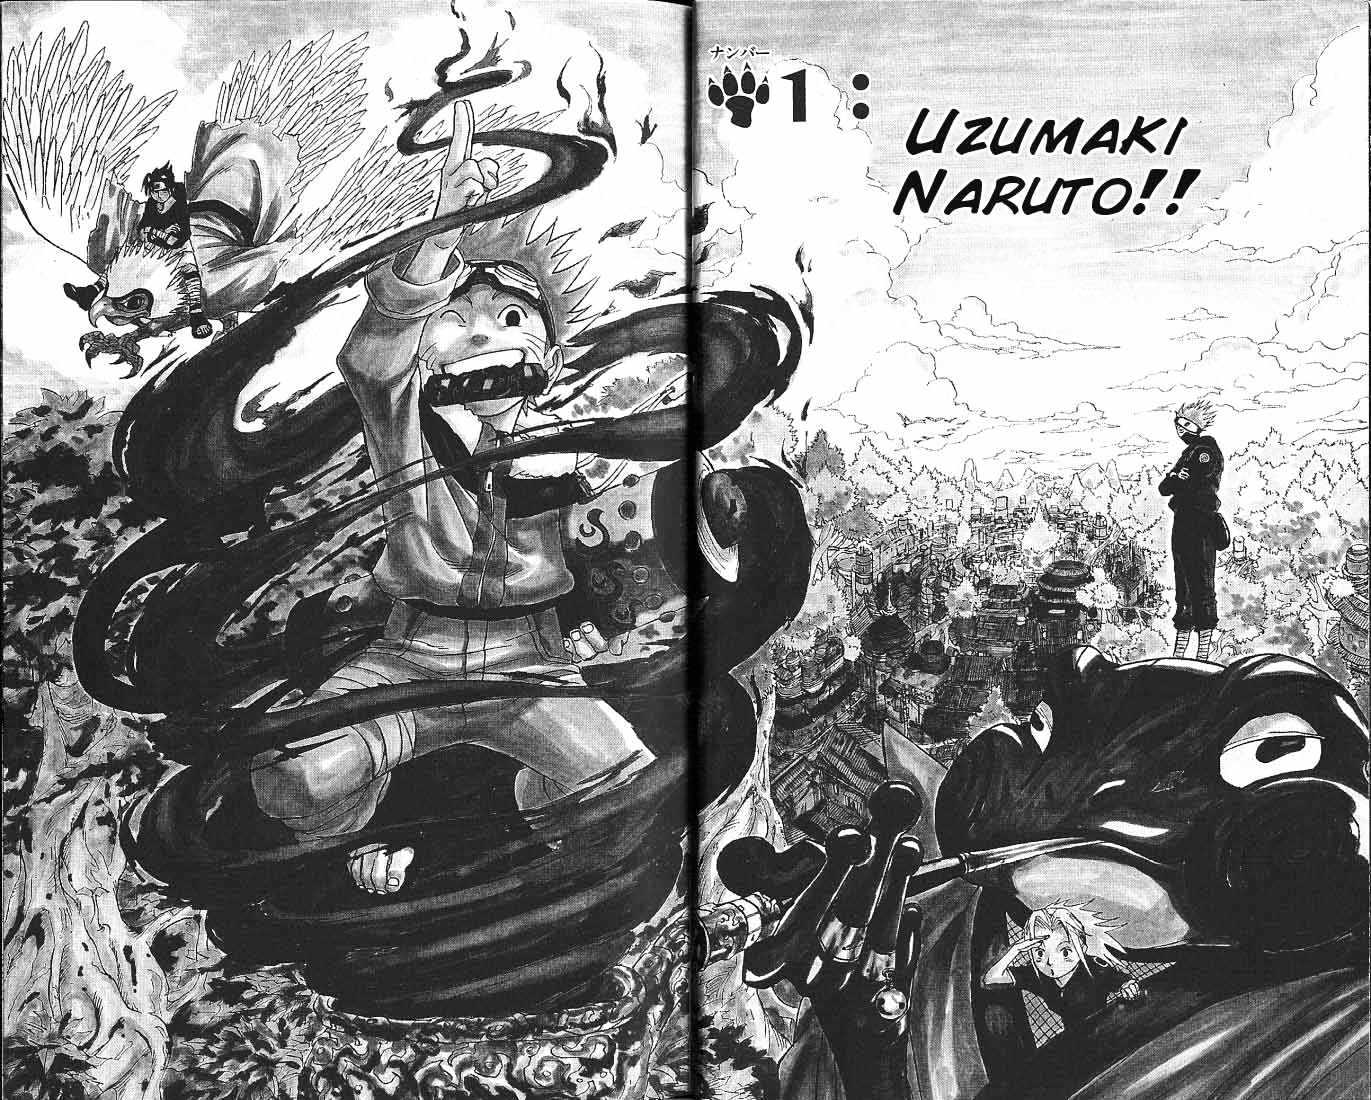 Naruto Vol.1 Chapter 1 : Uzumaki Naruto - Picture 2